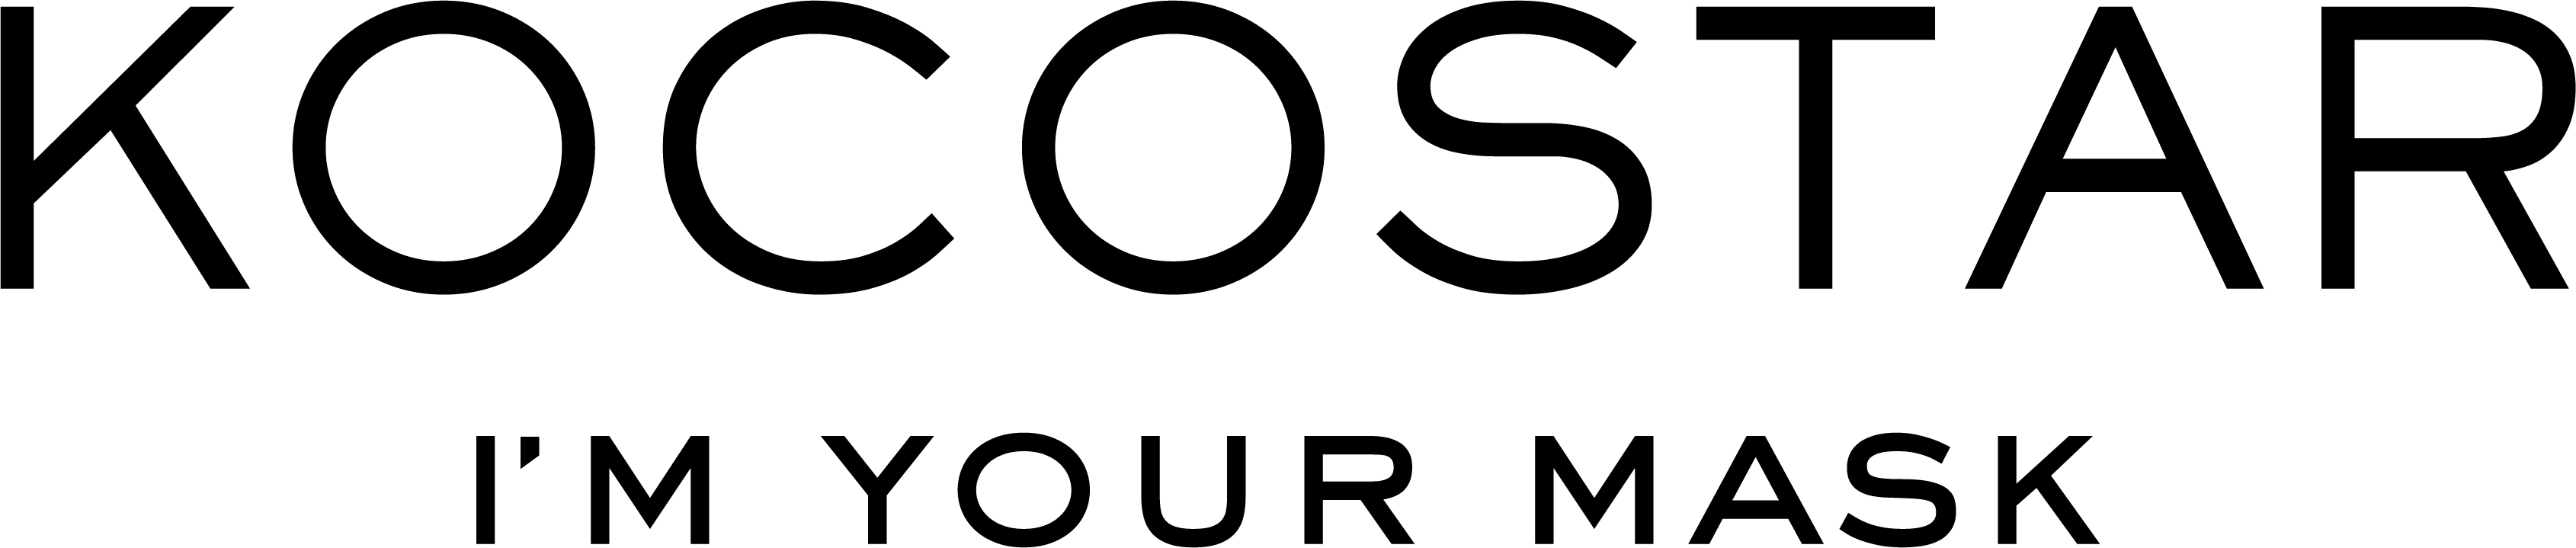 Kocostar Logo